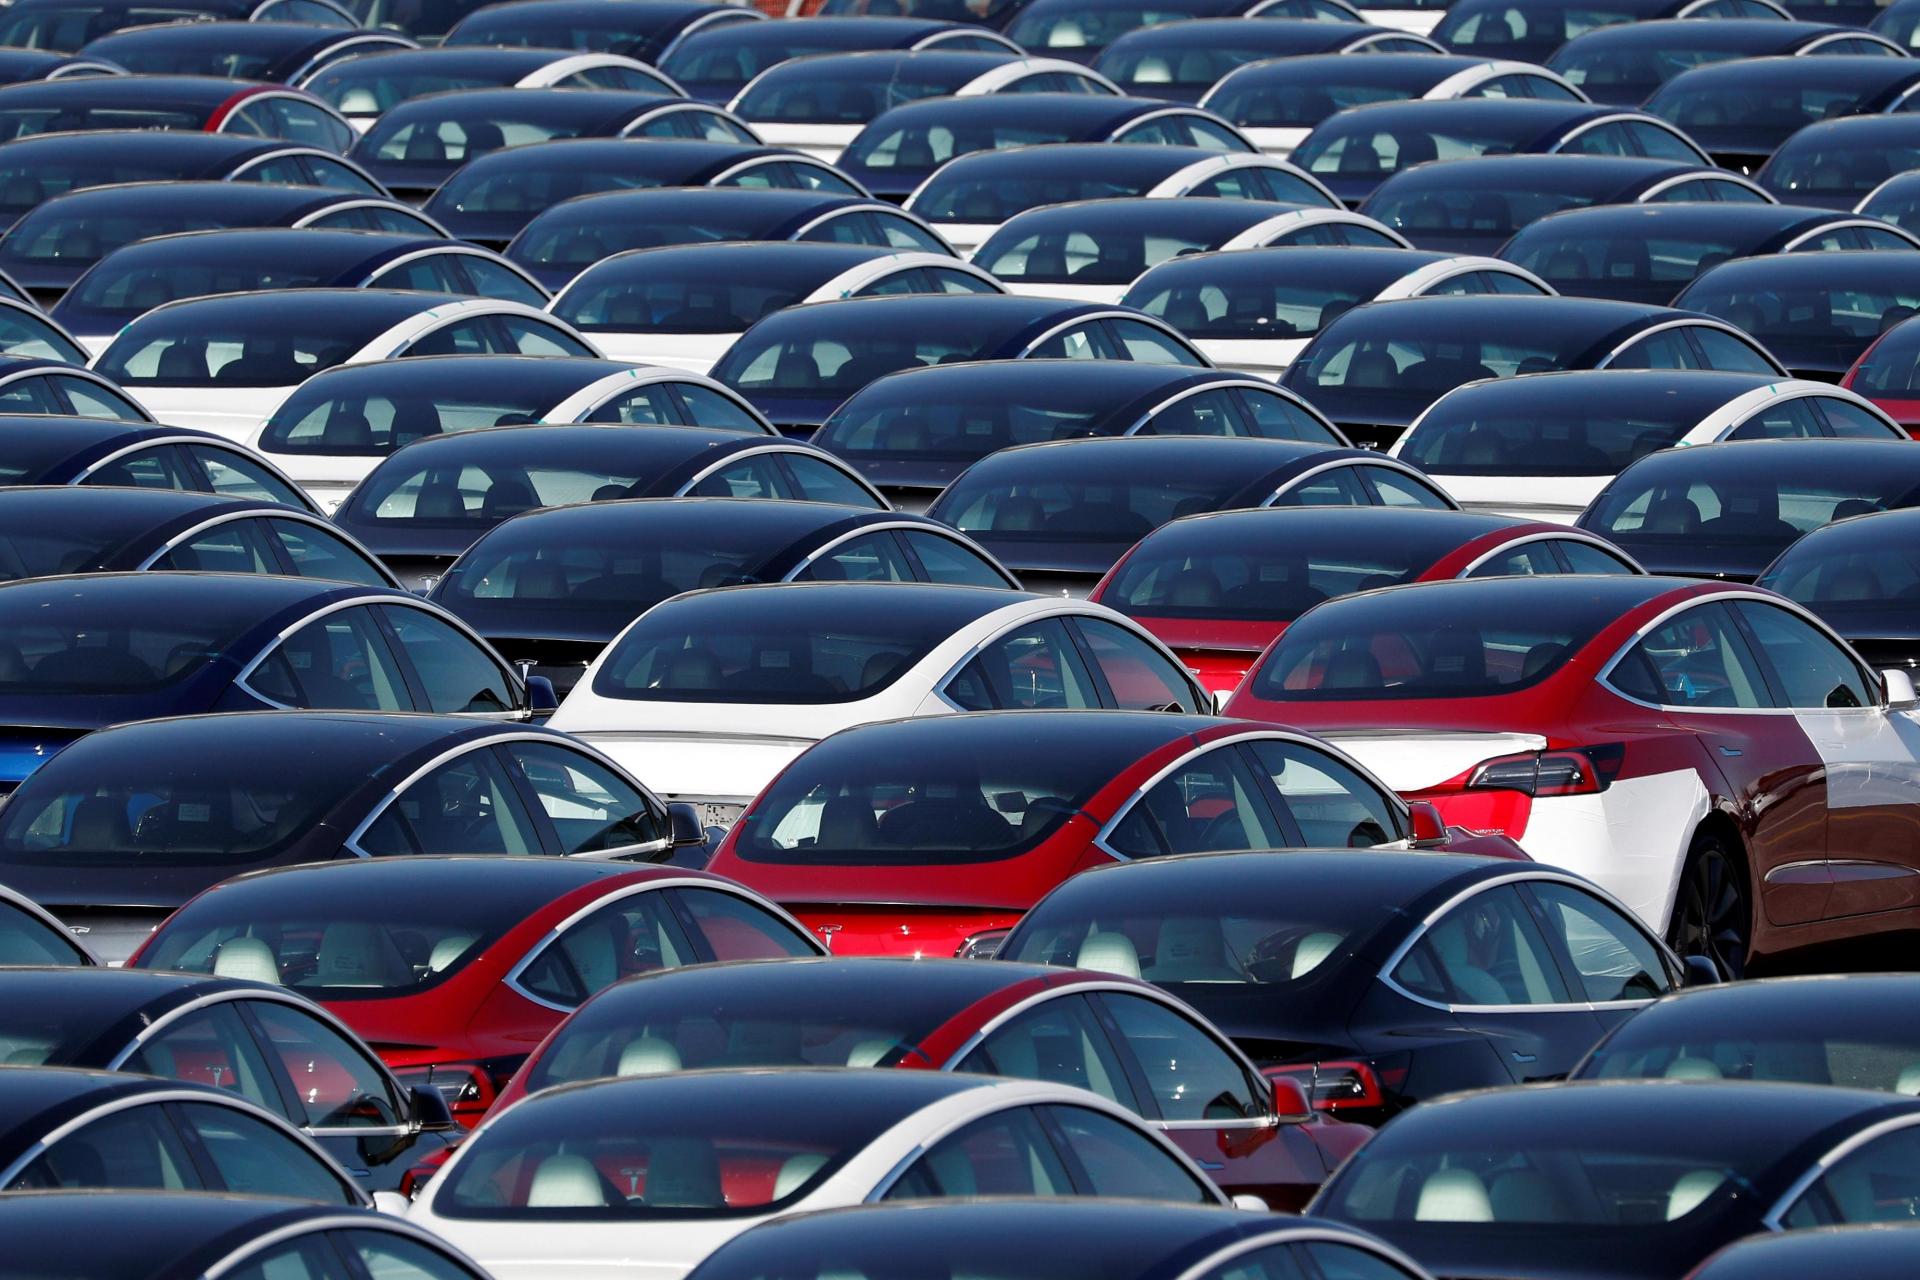 Marché automobile: les ventes accentuent leur baisse en février